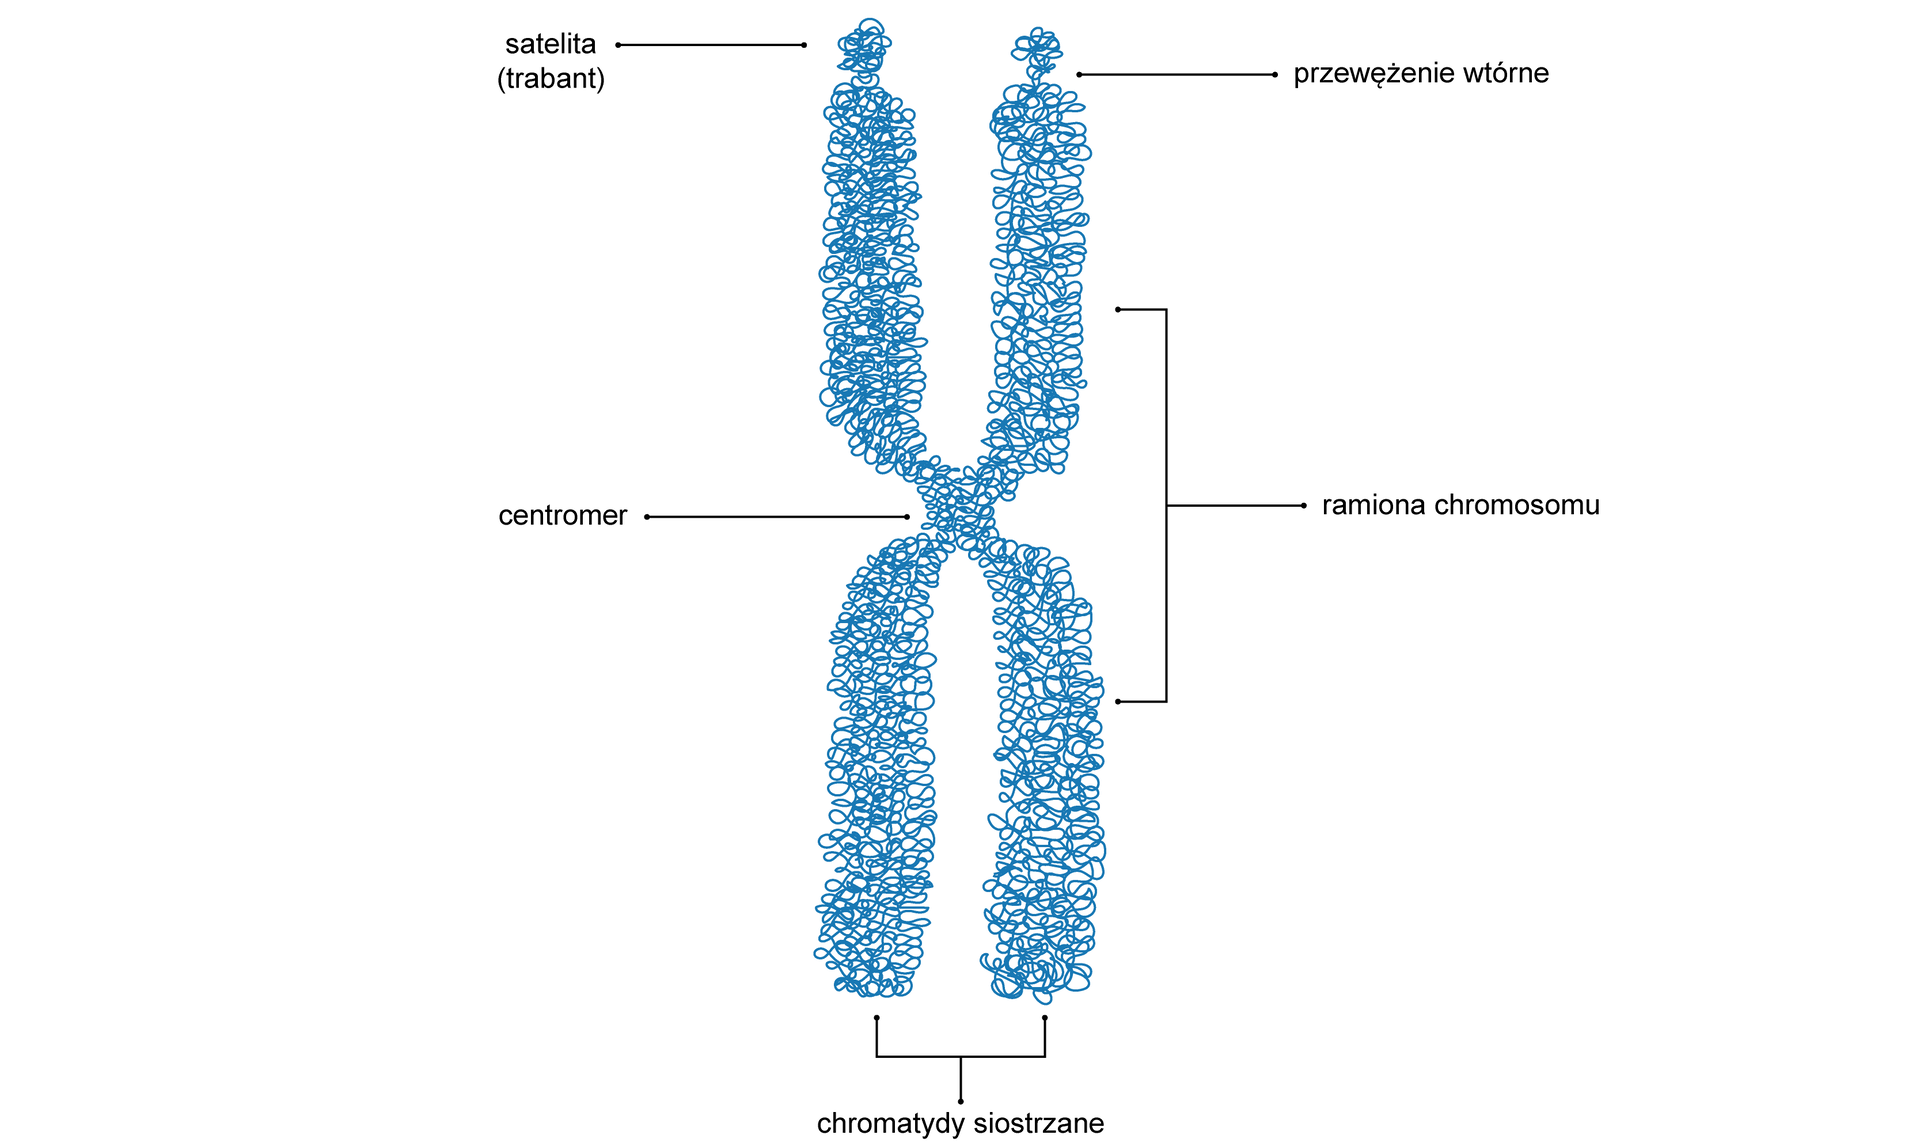 Grafika przedstawia budowę chromosomu. Jest on zbudowany z dwóch chromatyd siostrzanych połączonych centromerem. Każda z chromatyd posiada po dwa ramiona, przez co chromosom swoim kształtem przypomina literę X. Na szczycie ramion górnych chromosomu znajduje się przewężenie wtórne, za którym znajduje się satelita (trabant). 